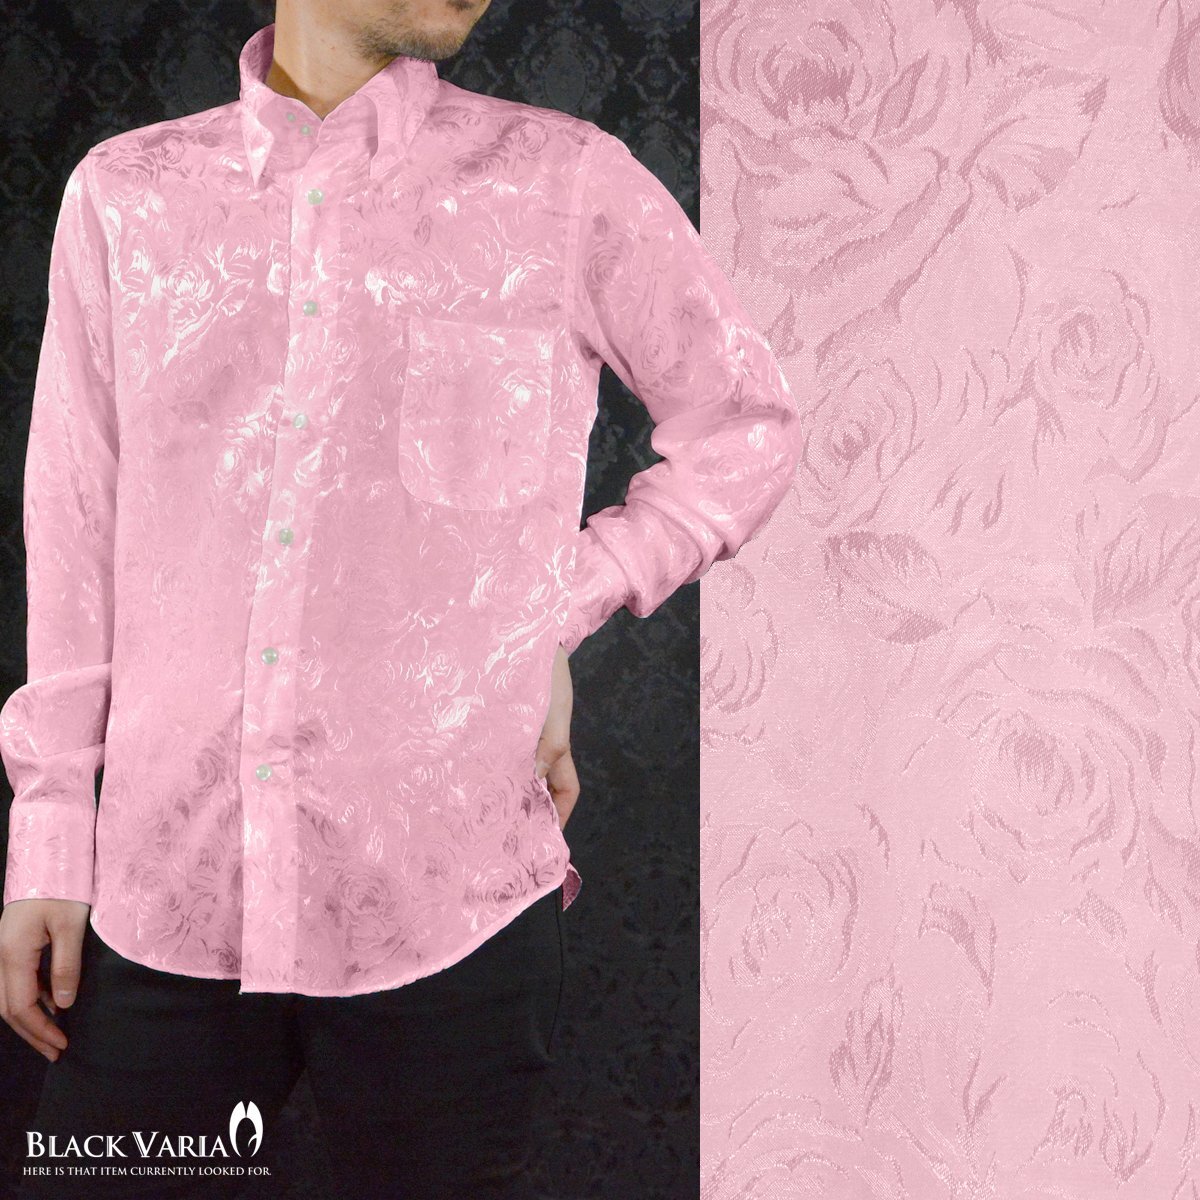 161222-pk BLACK VARIA ドゥエボットーニ 光沢 サテン 薔薇 ローズ 花柄 織柄 スナップダウン 長袖ドレスシャツ メンズ(ピンク) M_画像2